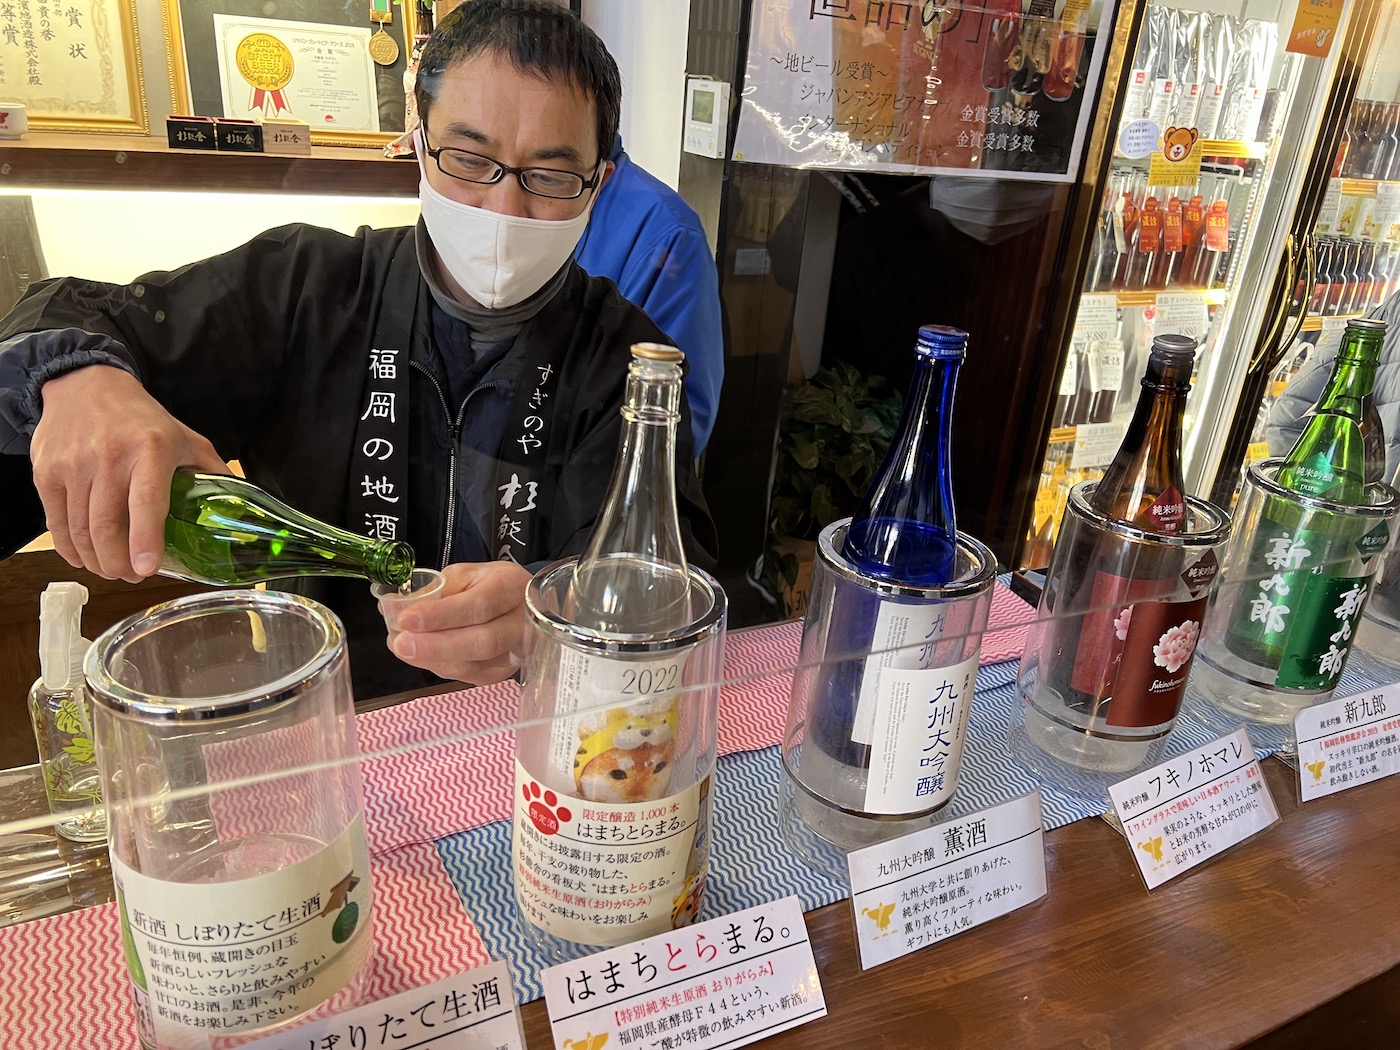 Sake Brewery Opening 2022 at Suginoya, Itoshima / 糸島の杉能舎蔵開き2022